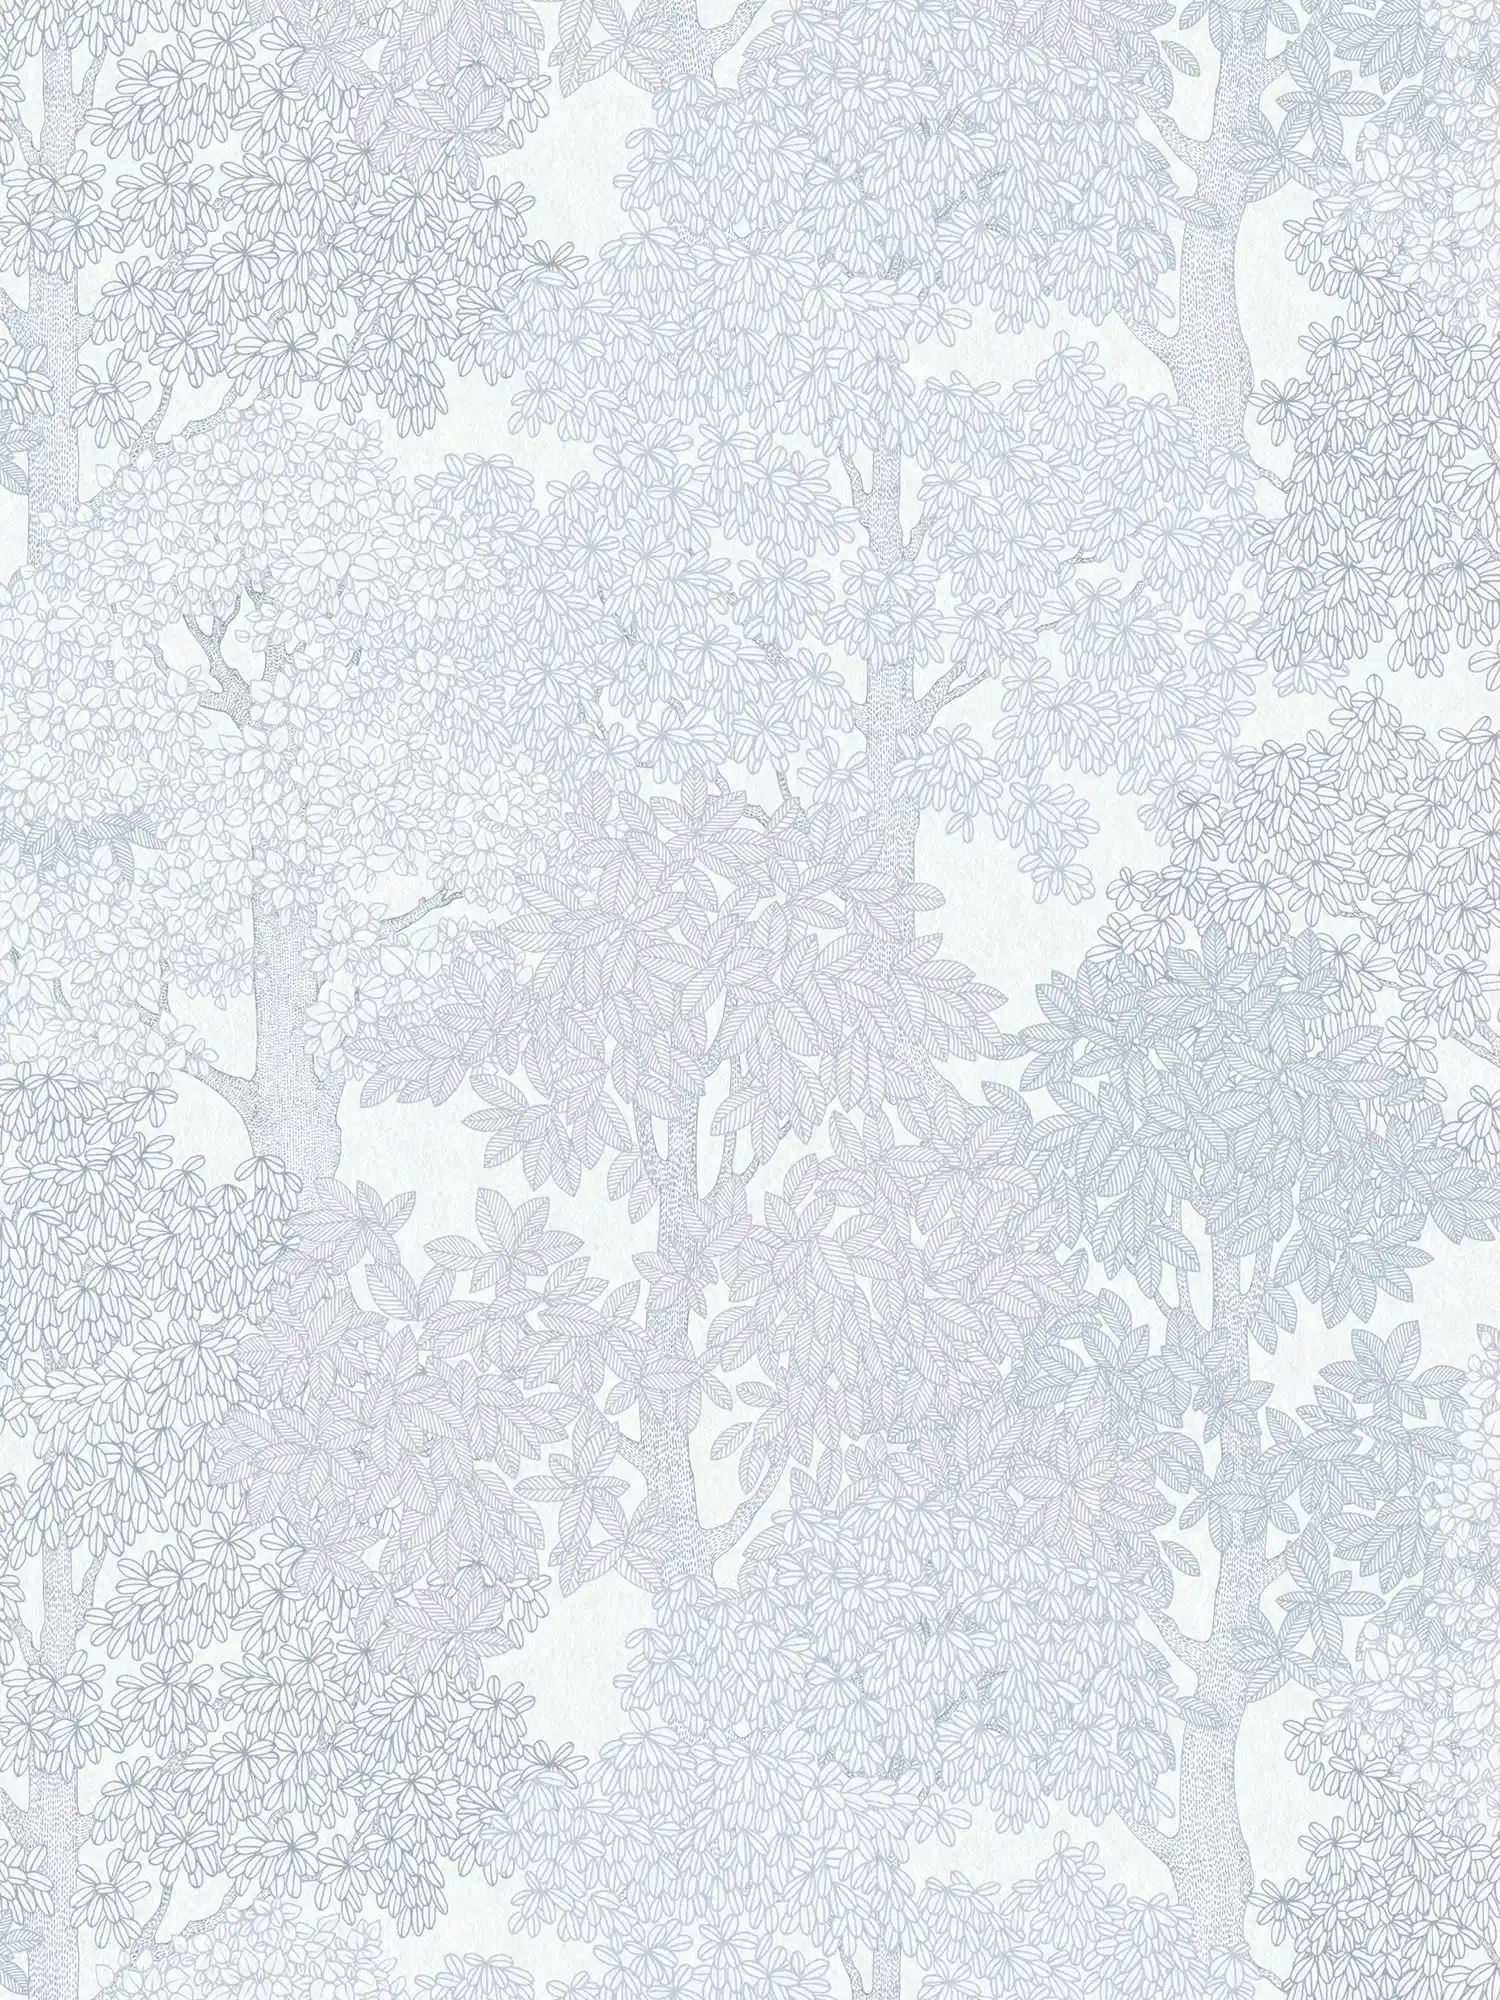 Tapete Grau mit Wald Muster & Bäumen im Zeichenstil – Grau, Weiß
